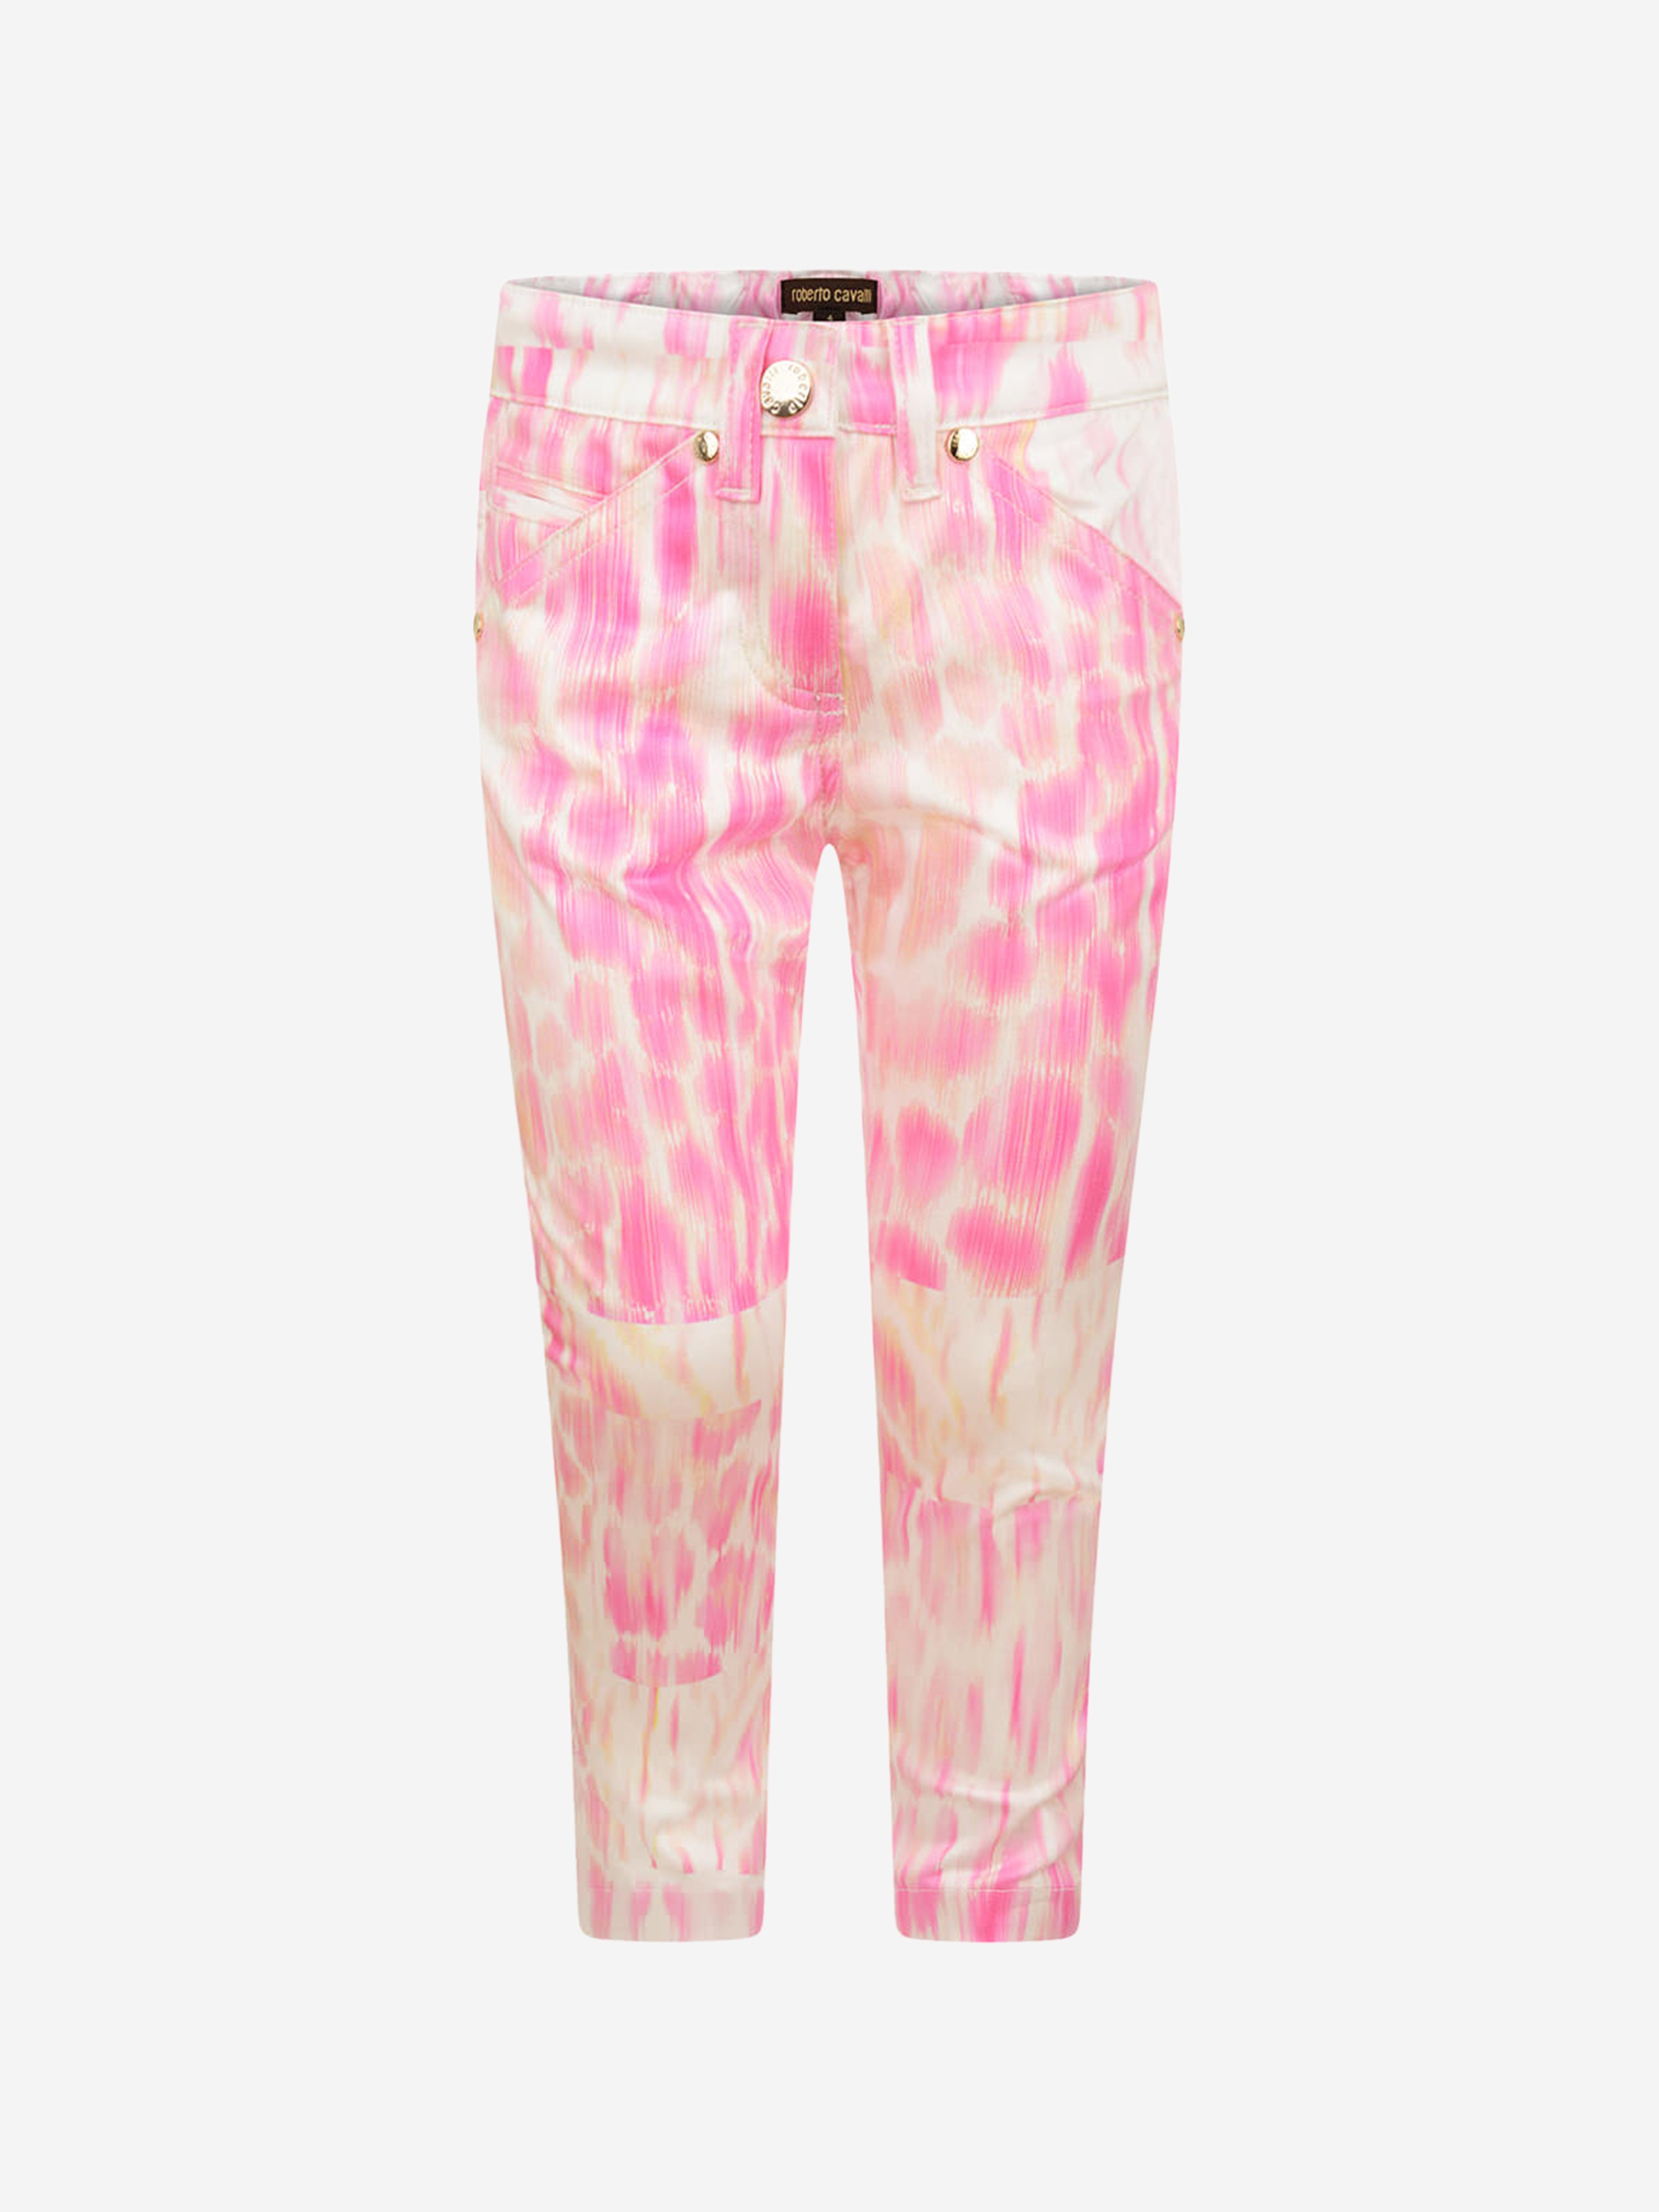 Roberto Cavalli Kids' Girls Leopard Print Trousers 6 Yrs Pink